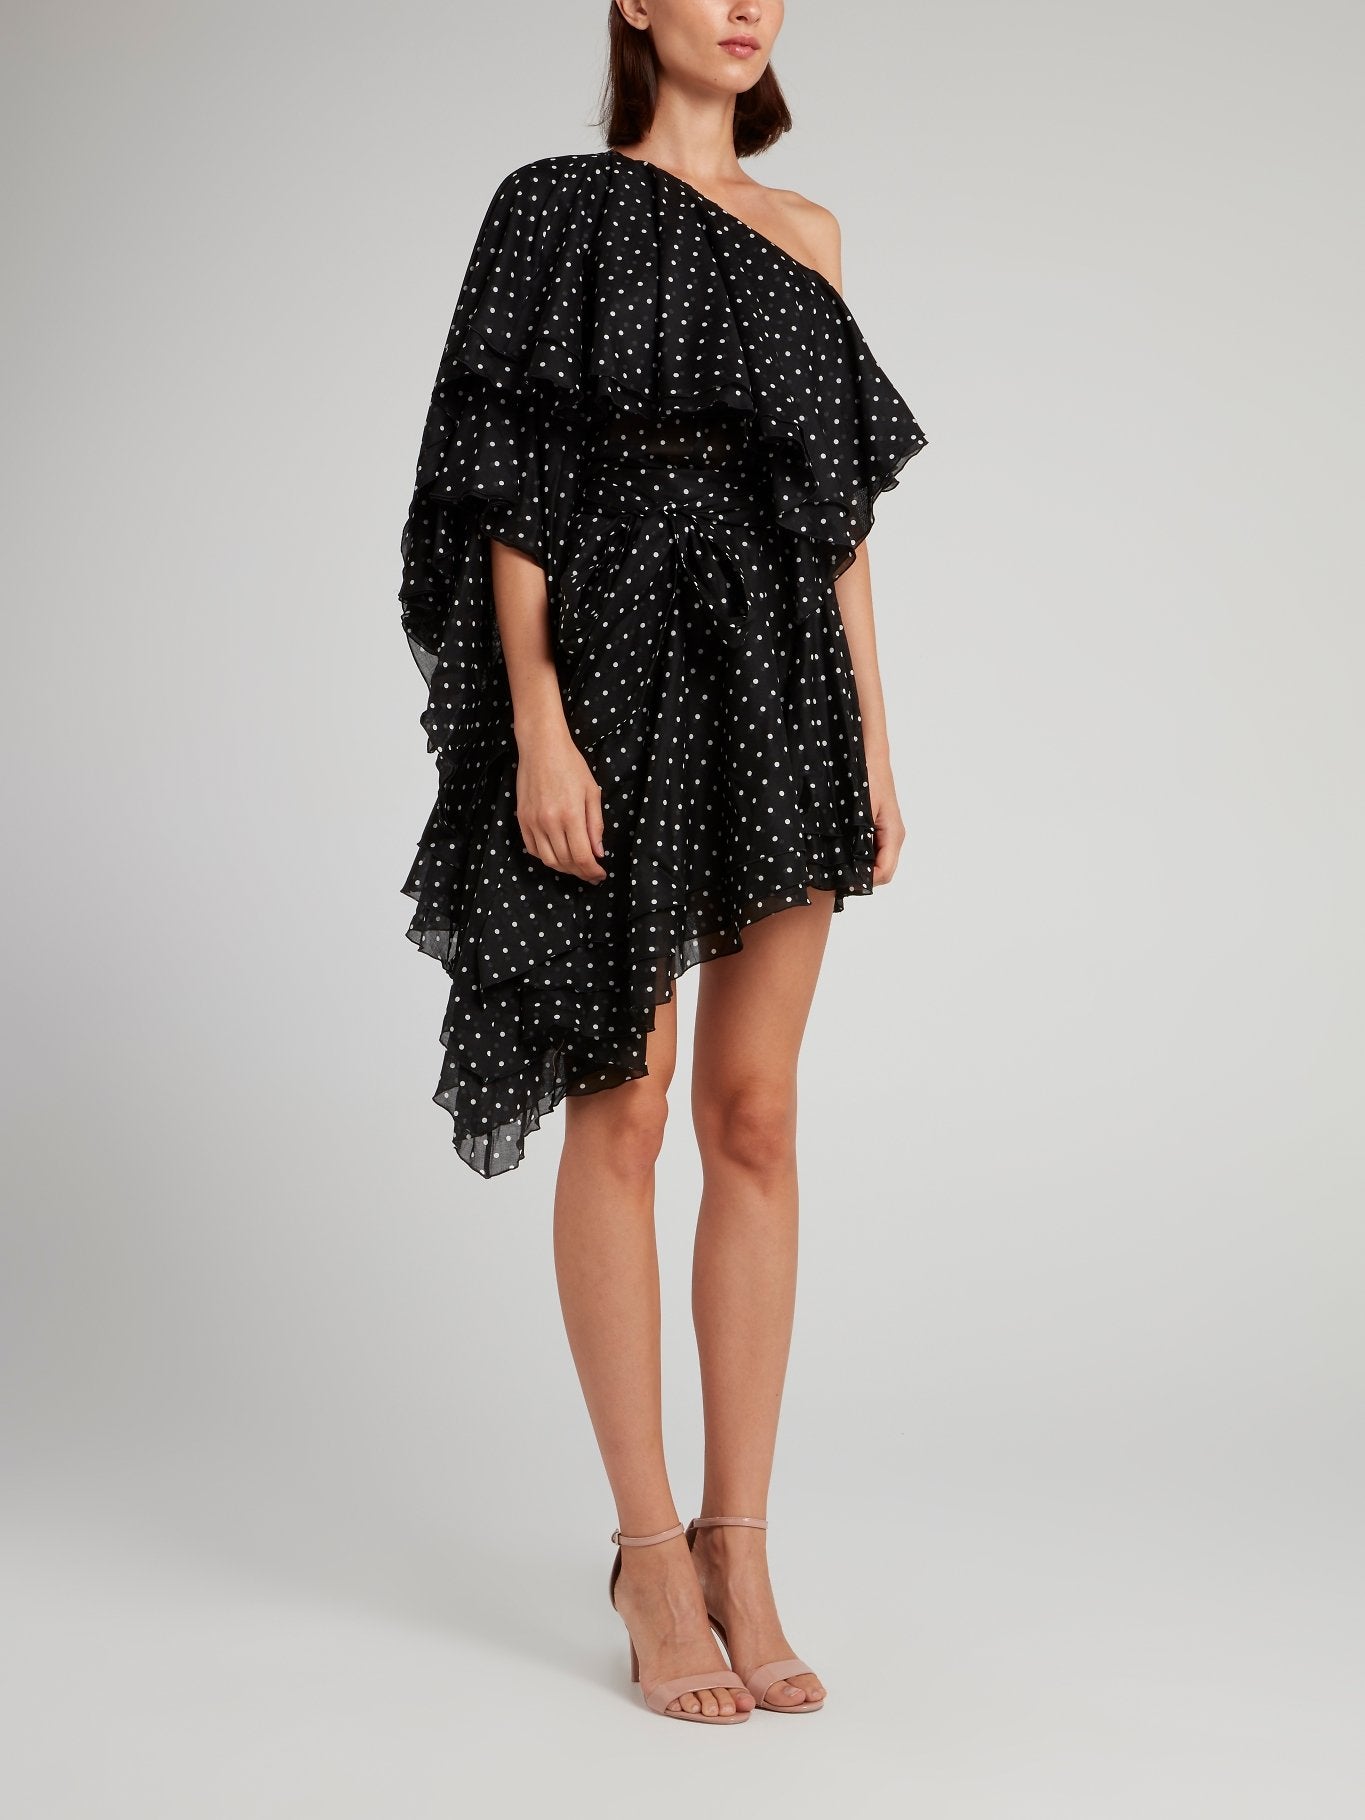 Black Asymmetric Polka Dot Mini Dress